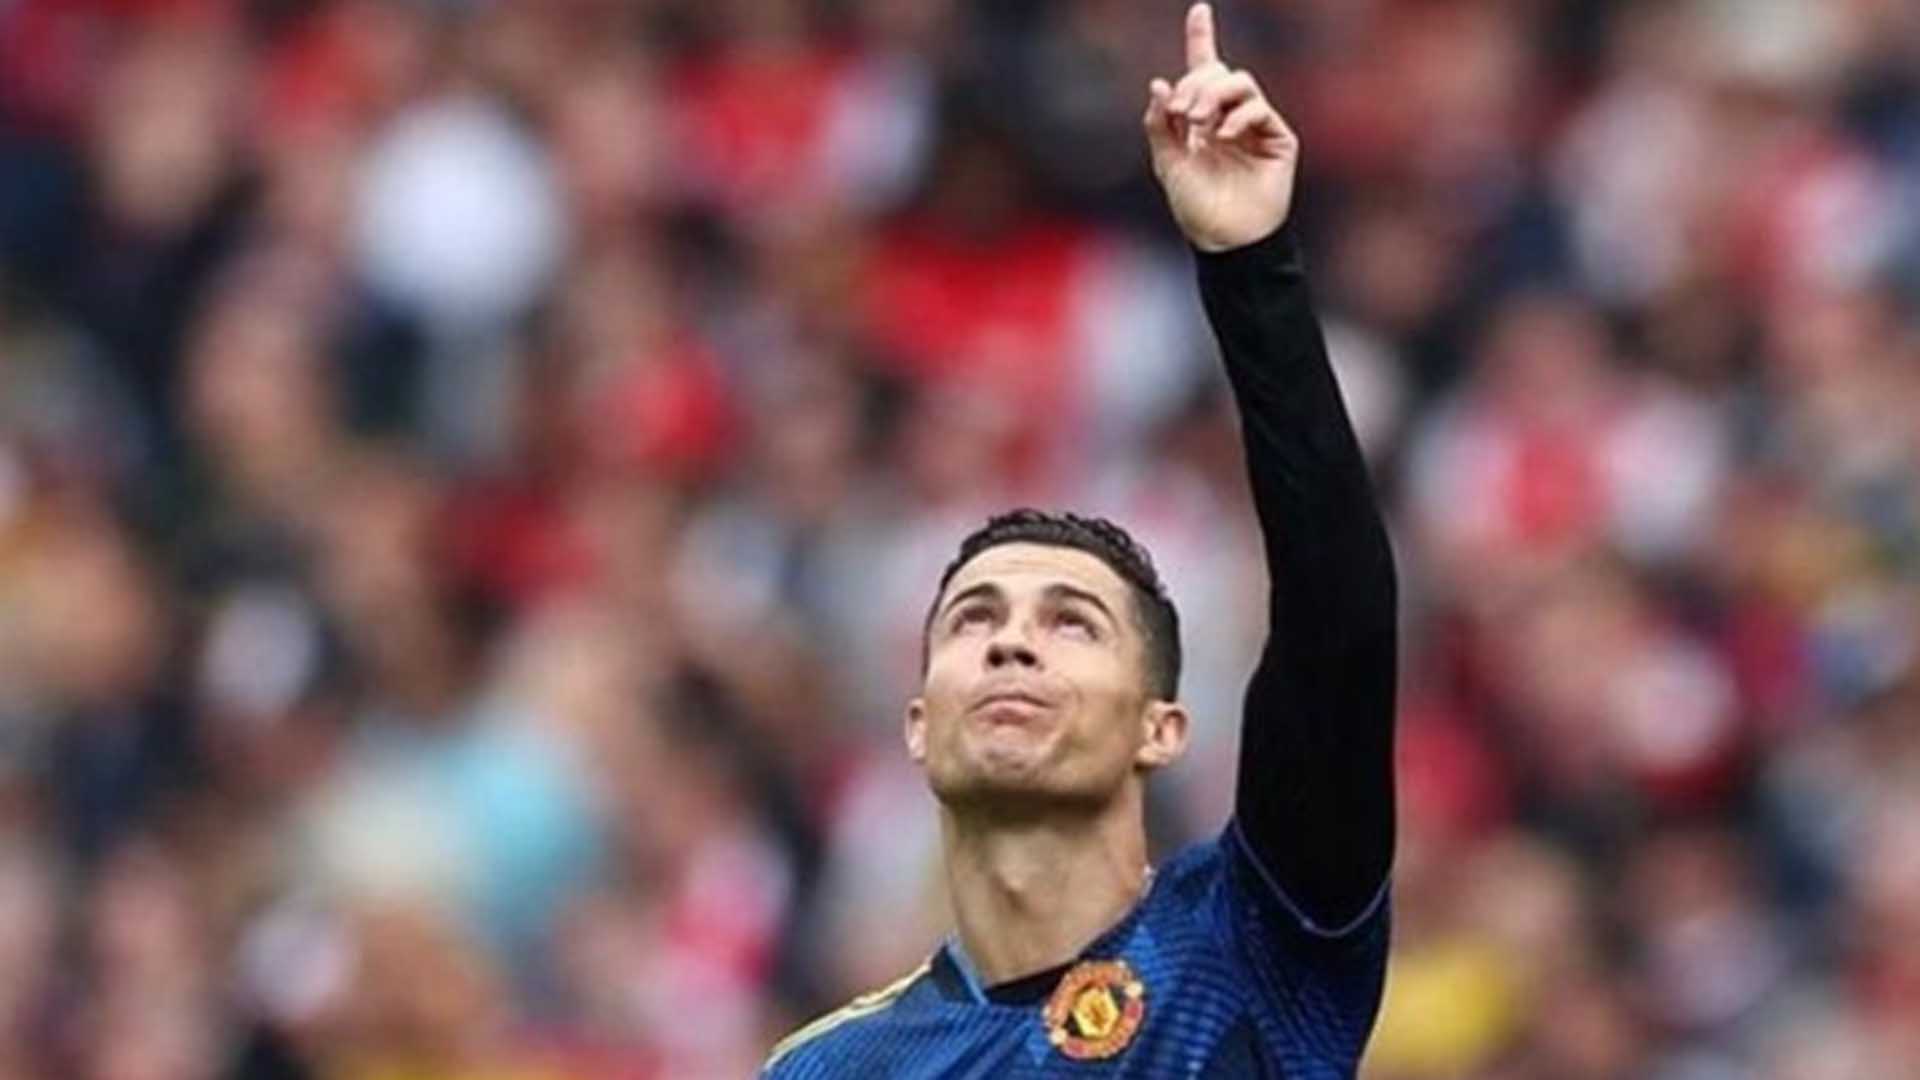 El emotivo homenaje de Cristiano Ronaldo a su hijo fallecido